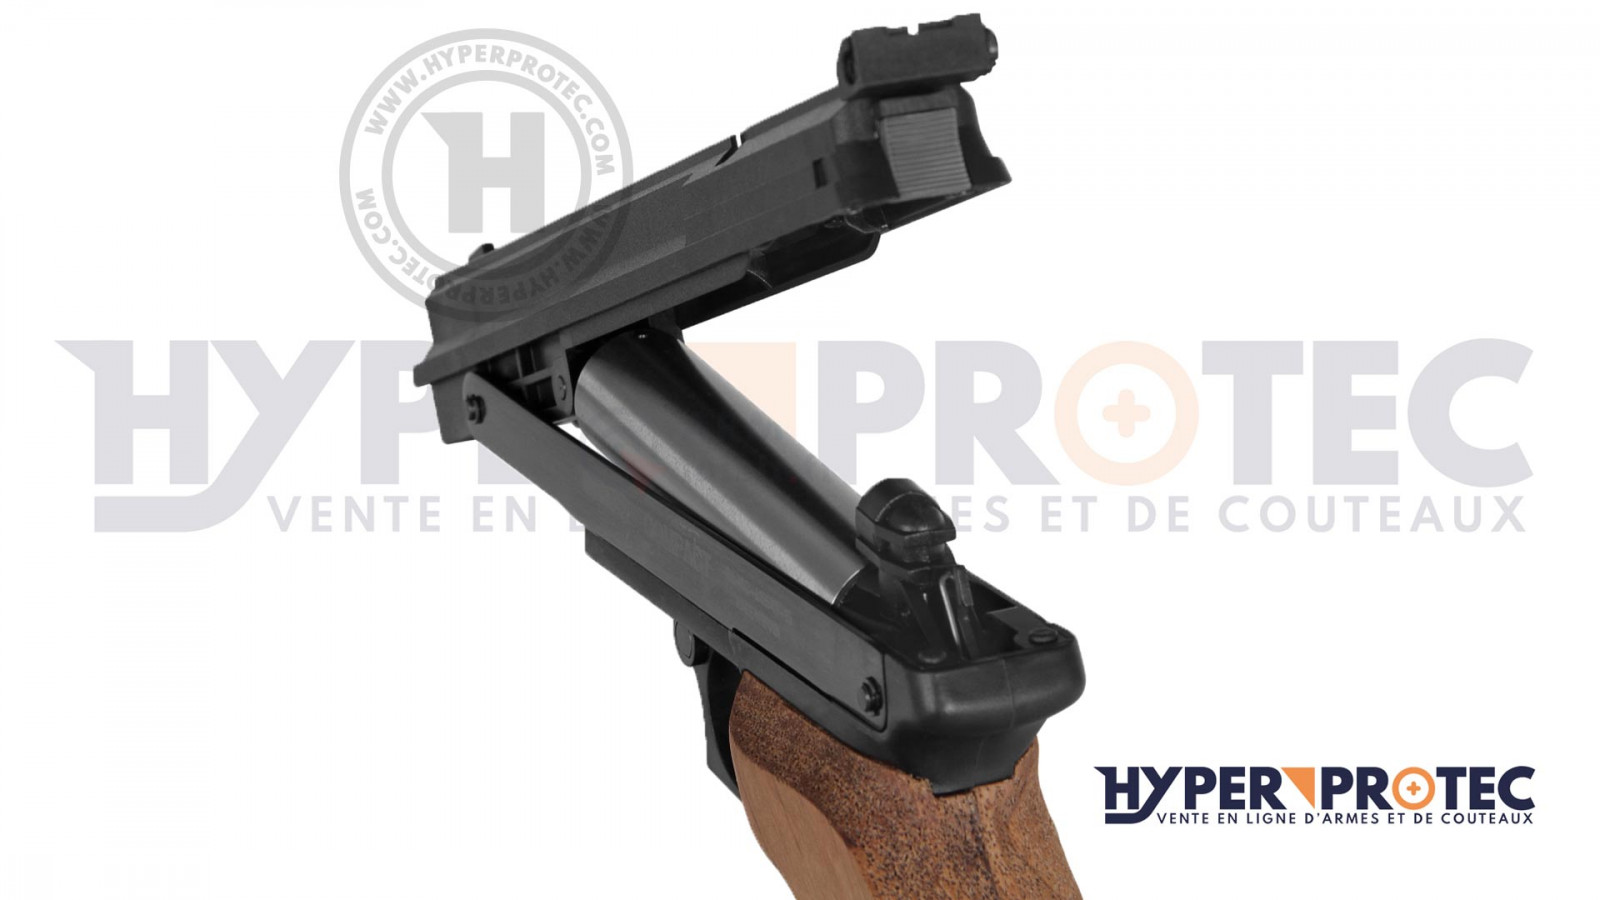 Pistolet à plomb Gamo Compact Gaucher 4.5 mm (3.67 joules